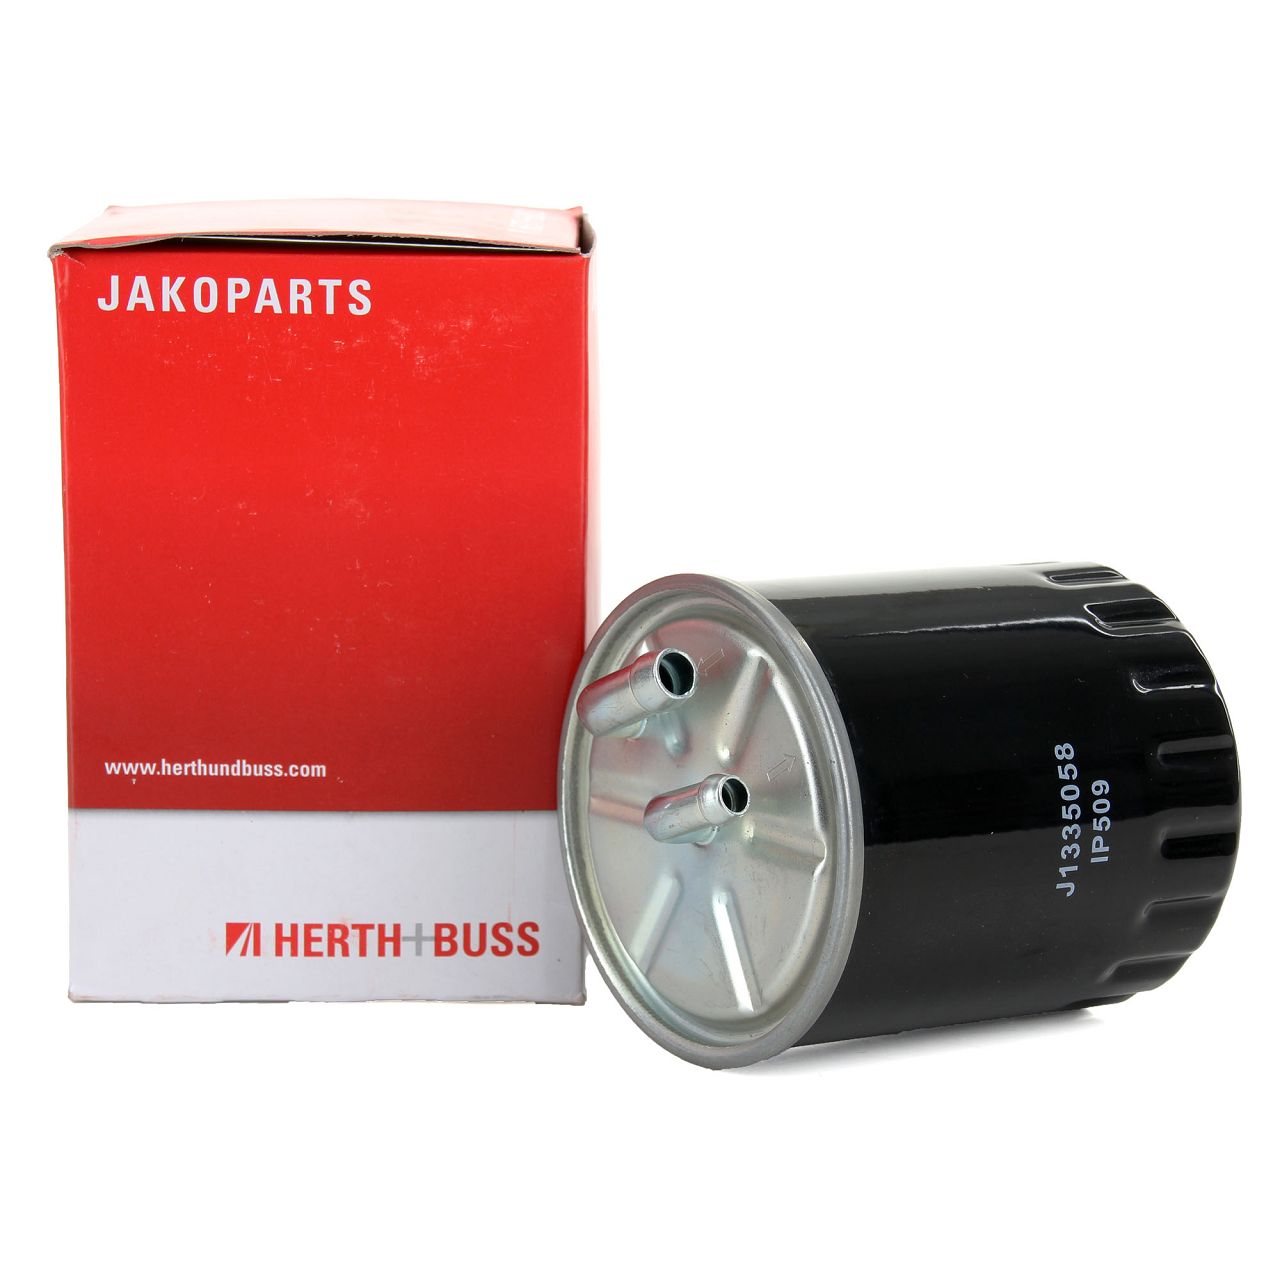 HERTH+BUSS JAKOPARTS Dieselfilter für MITSUBISHI COLT 1.5 DI-D SMART FORFOUR